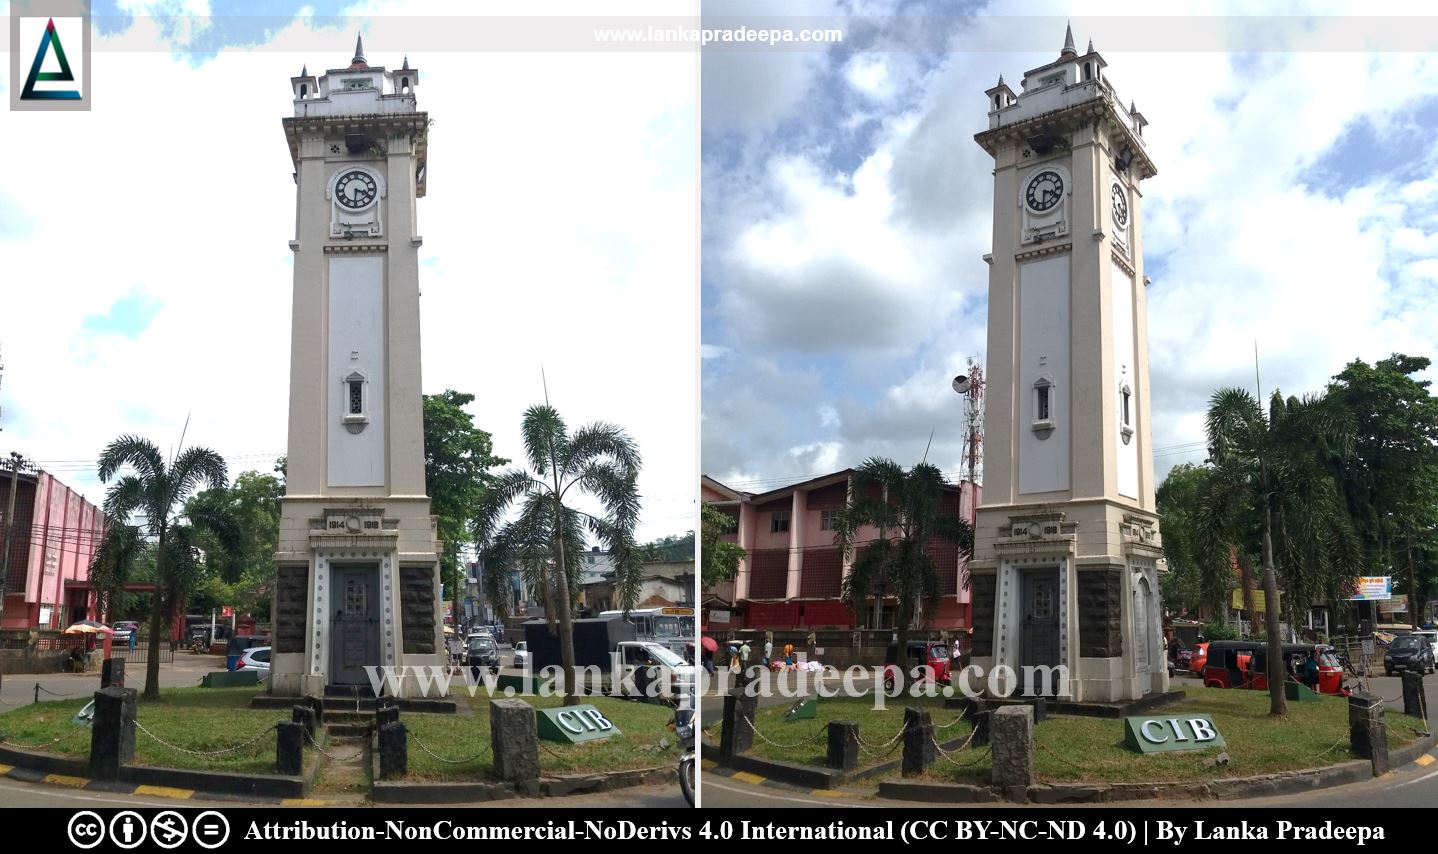 Ratnapura Clock Tower